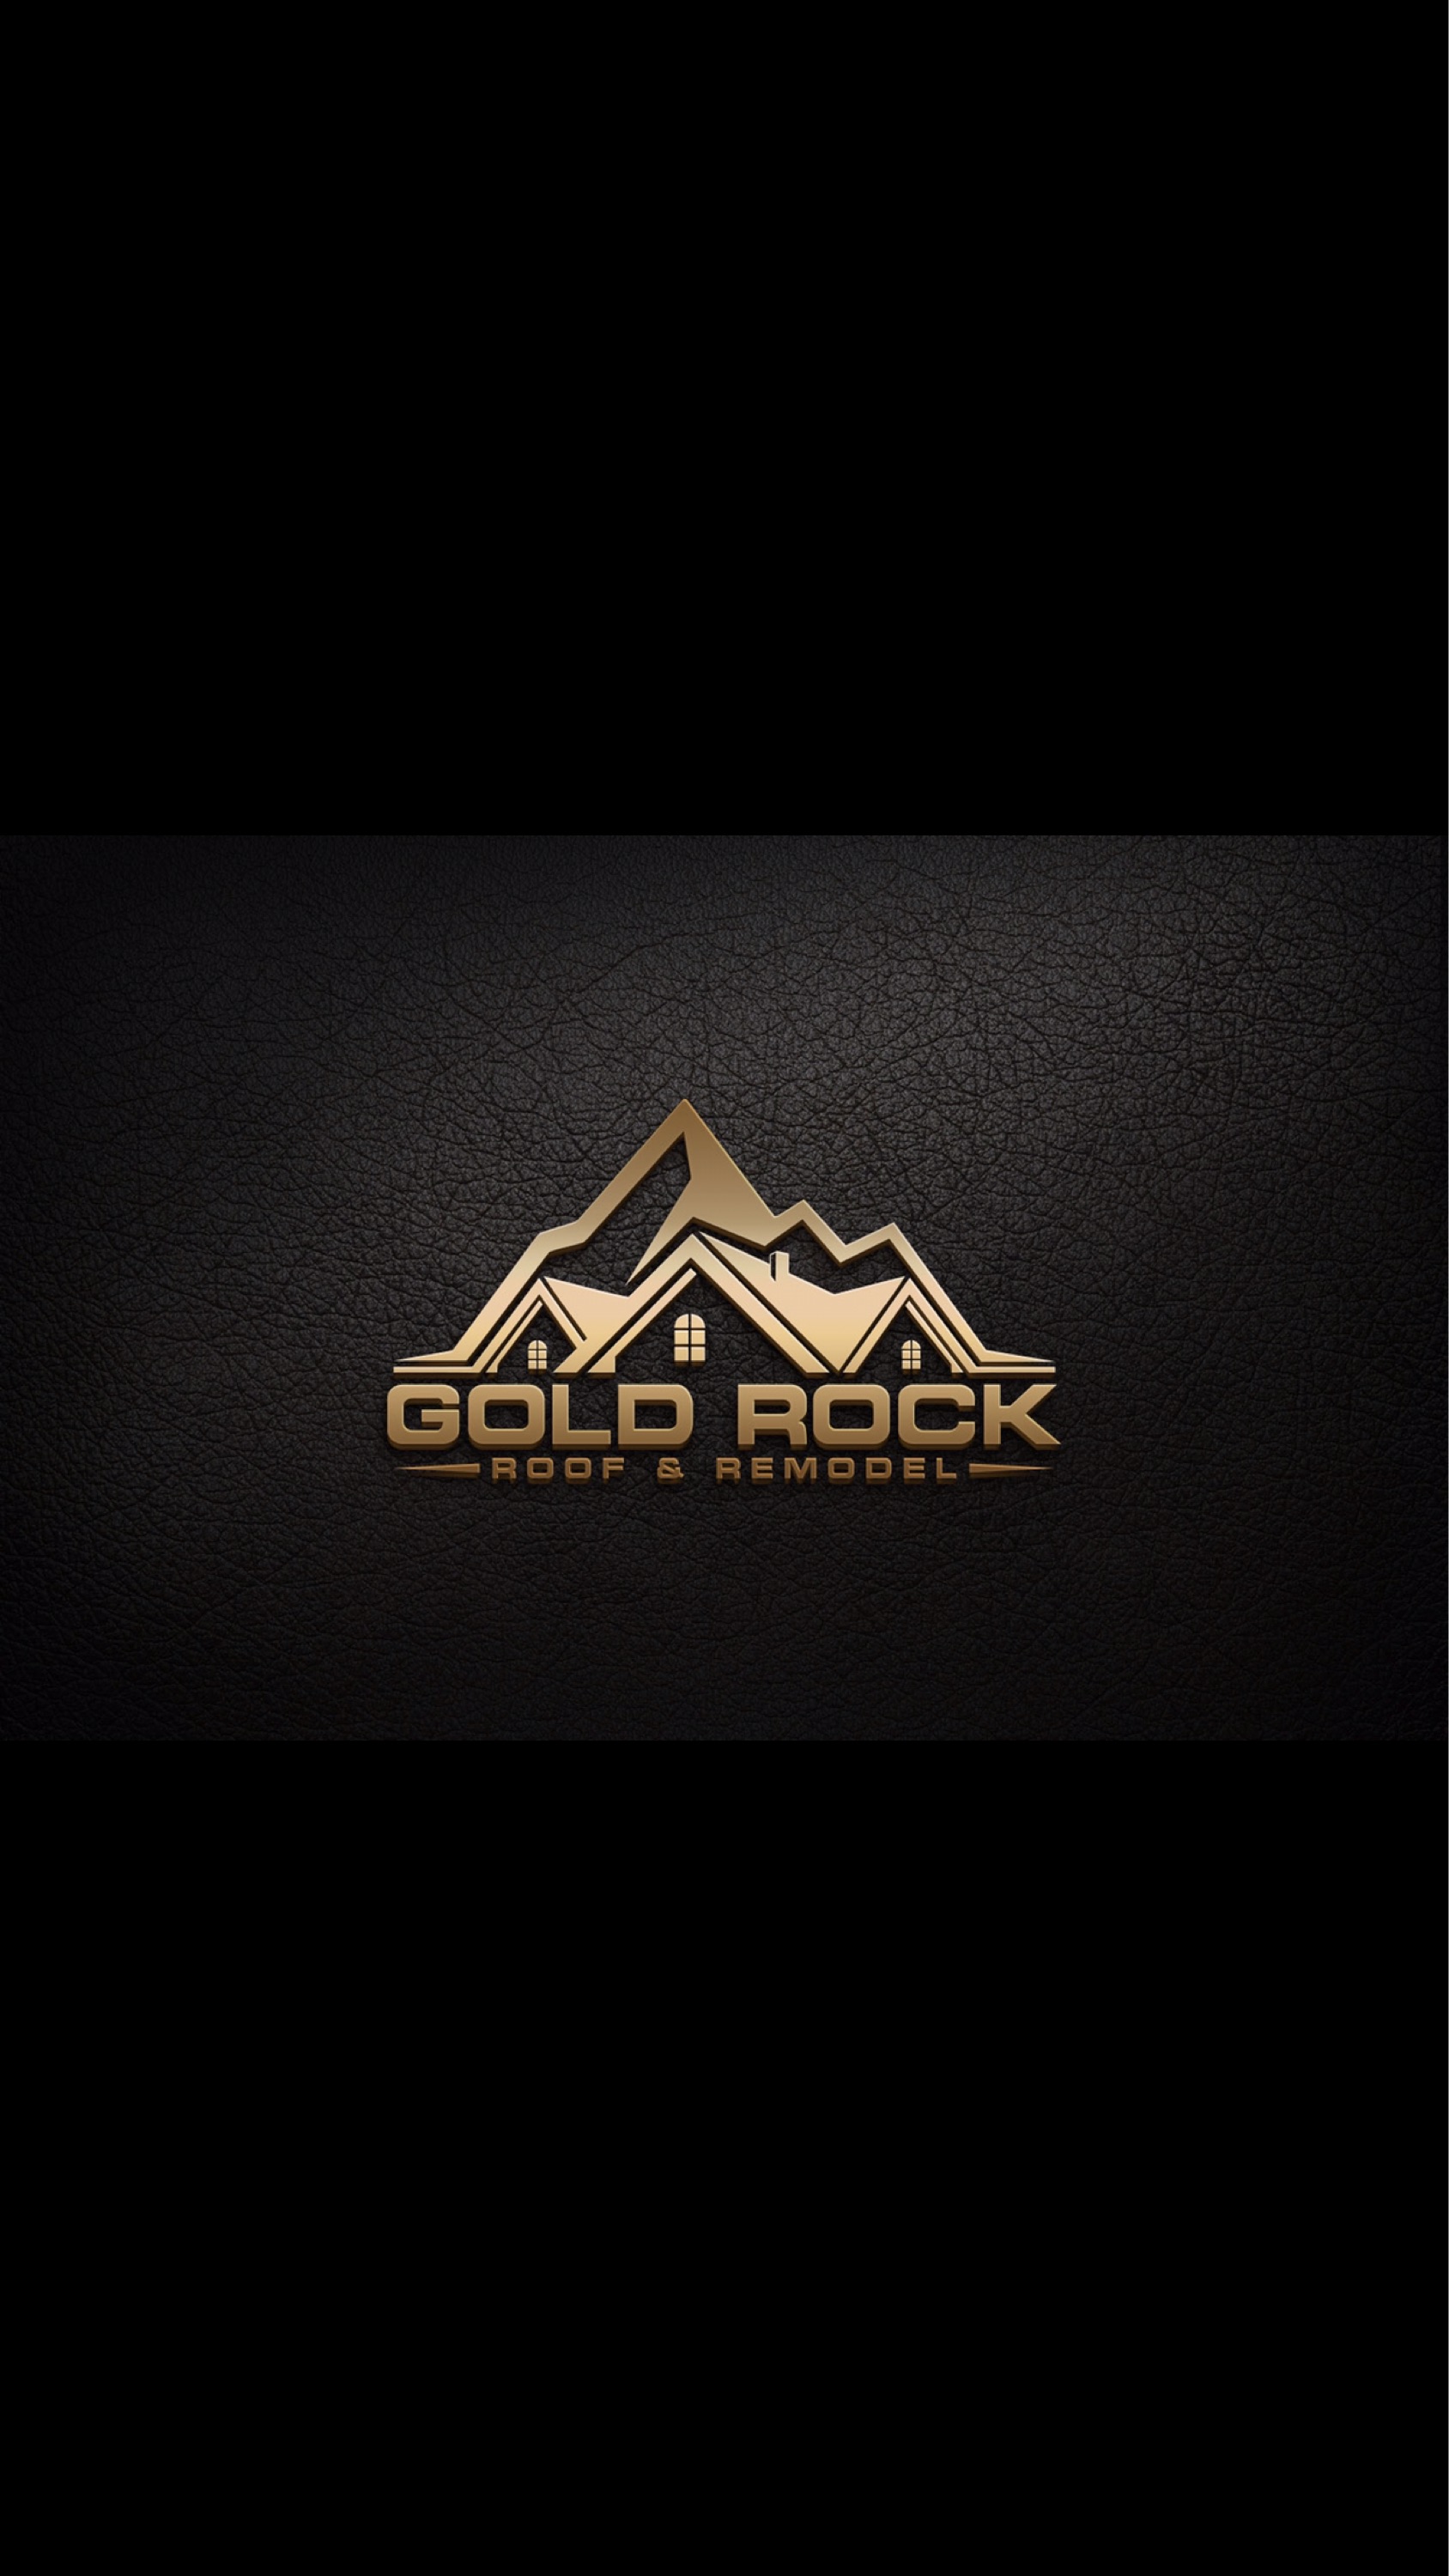 Gold Rock Roof & Remodel -   Facebook Logo